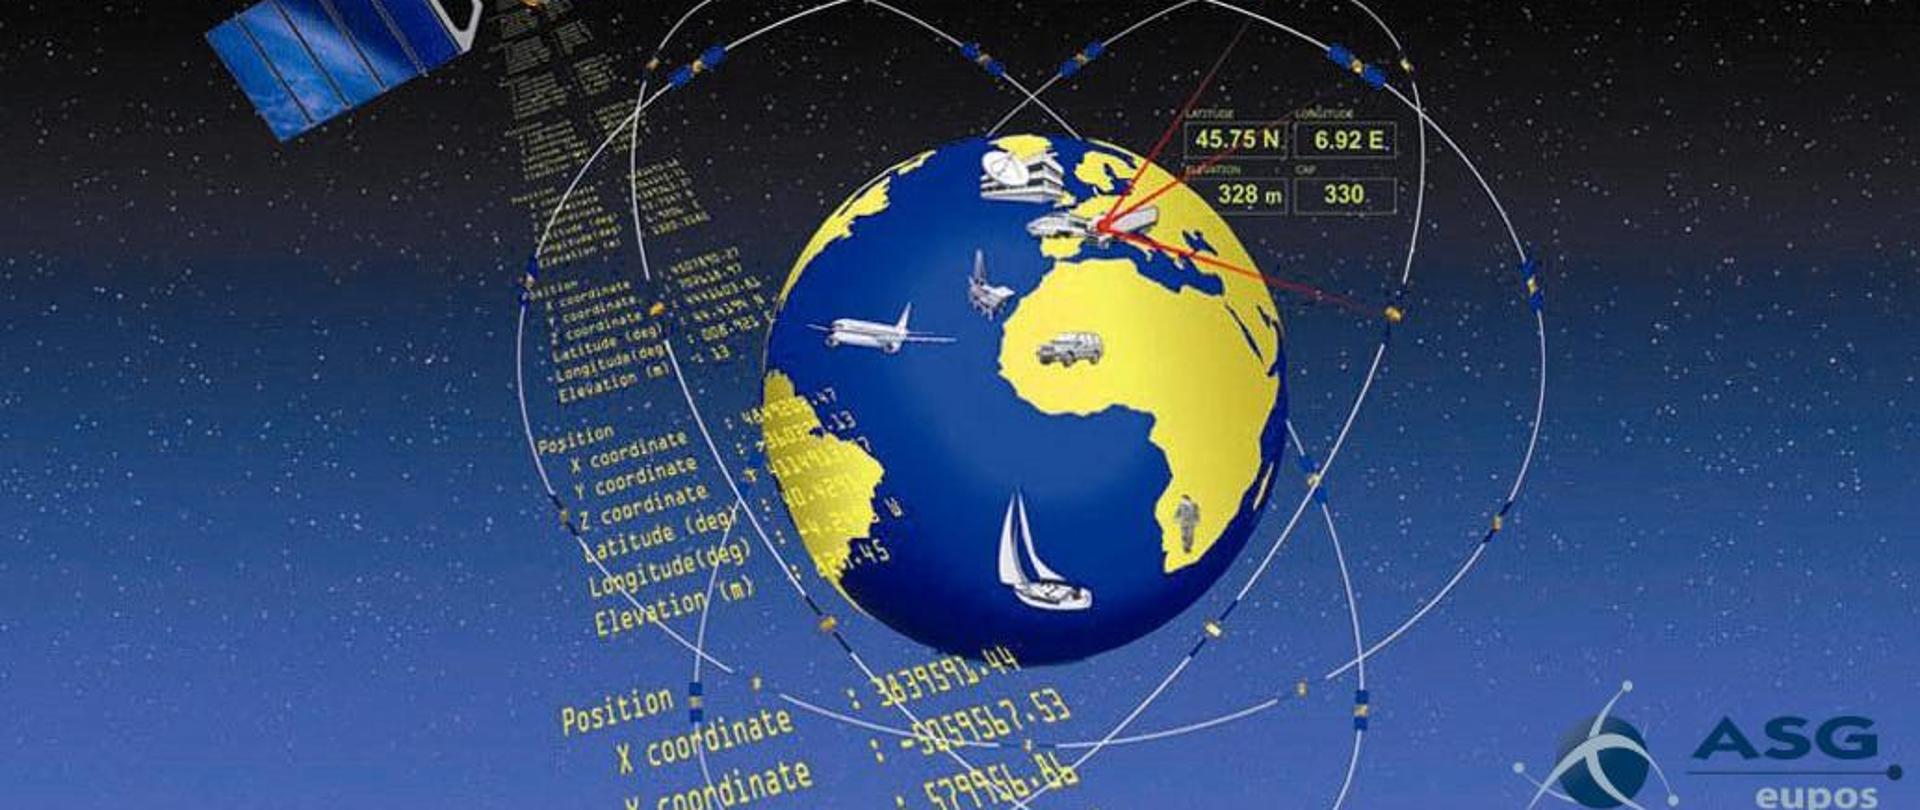 Rysunek przedstawia schemat działania satelitarnego systemie pozycjonowania przestrzennego GNSS